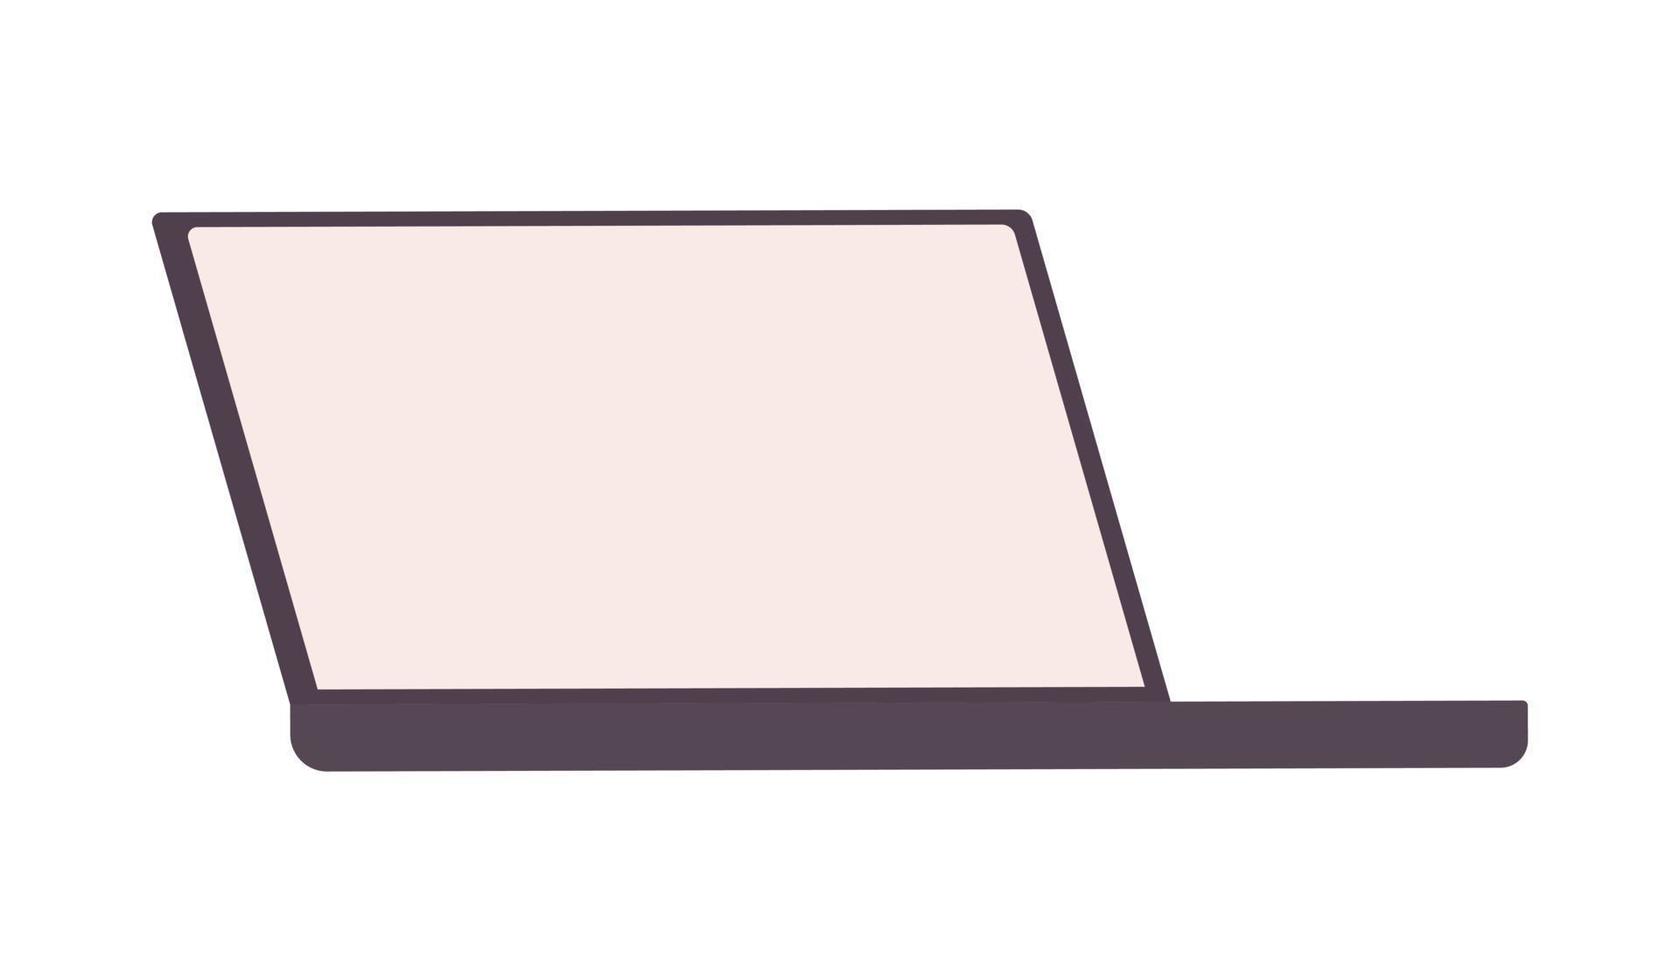 Laptop mit halbflachem Farbvektorobjekt des leeren Bildschirms. Notebook. bearbeitbares Element. Artikel in voller Größe auf weiß. technologie einfache karikaturartillustration für webgrafikdesign und -animation vektor